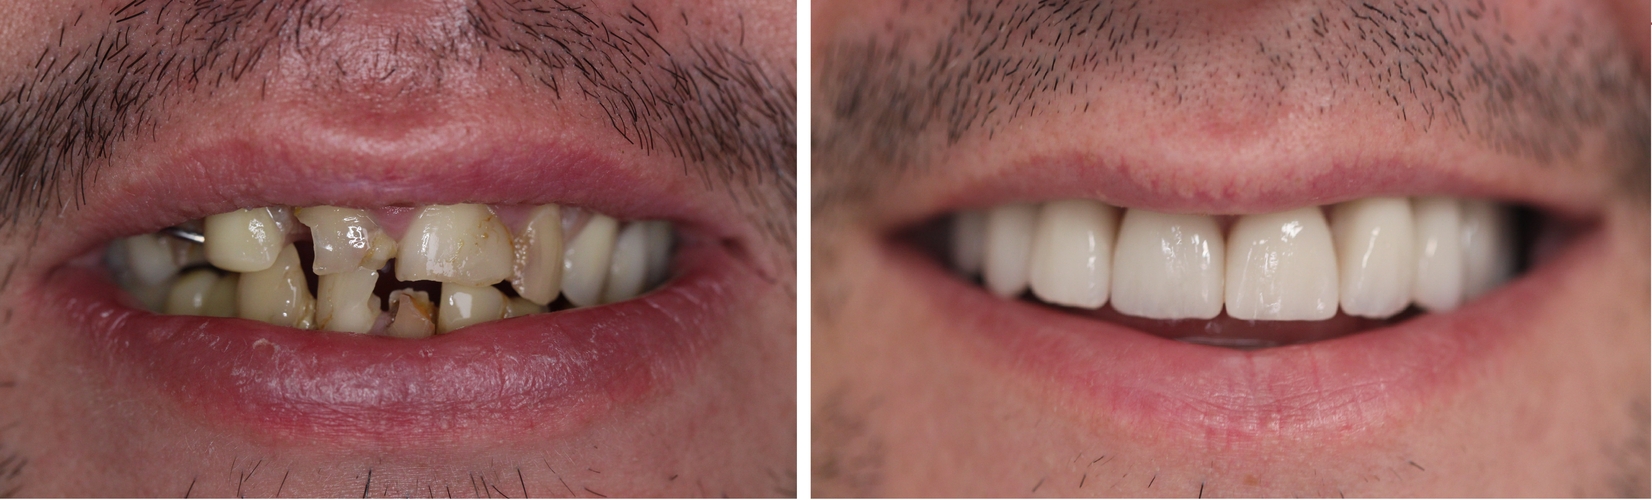 porównanie zębów przed i po